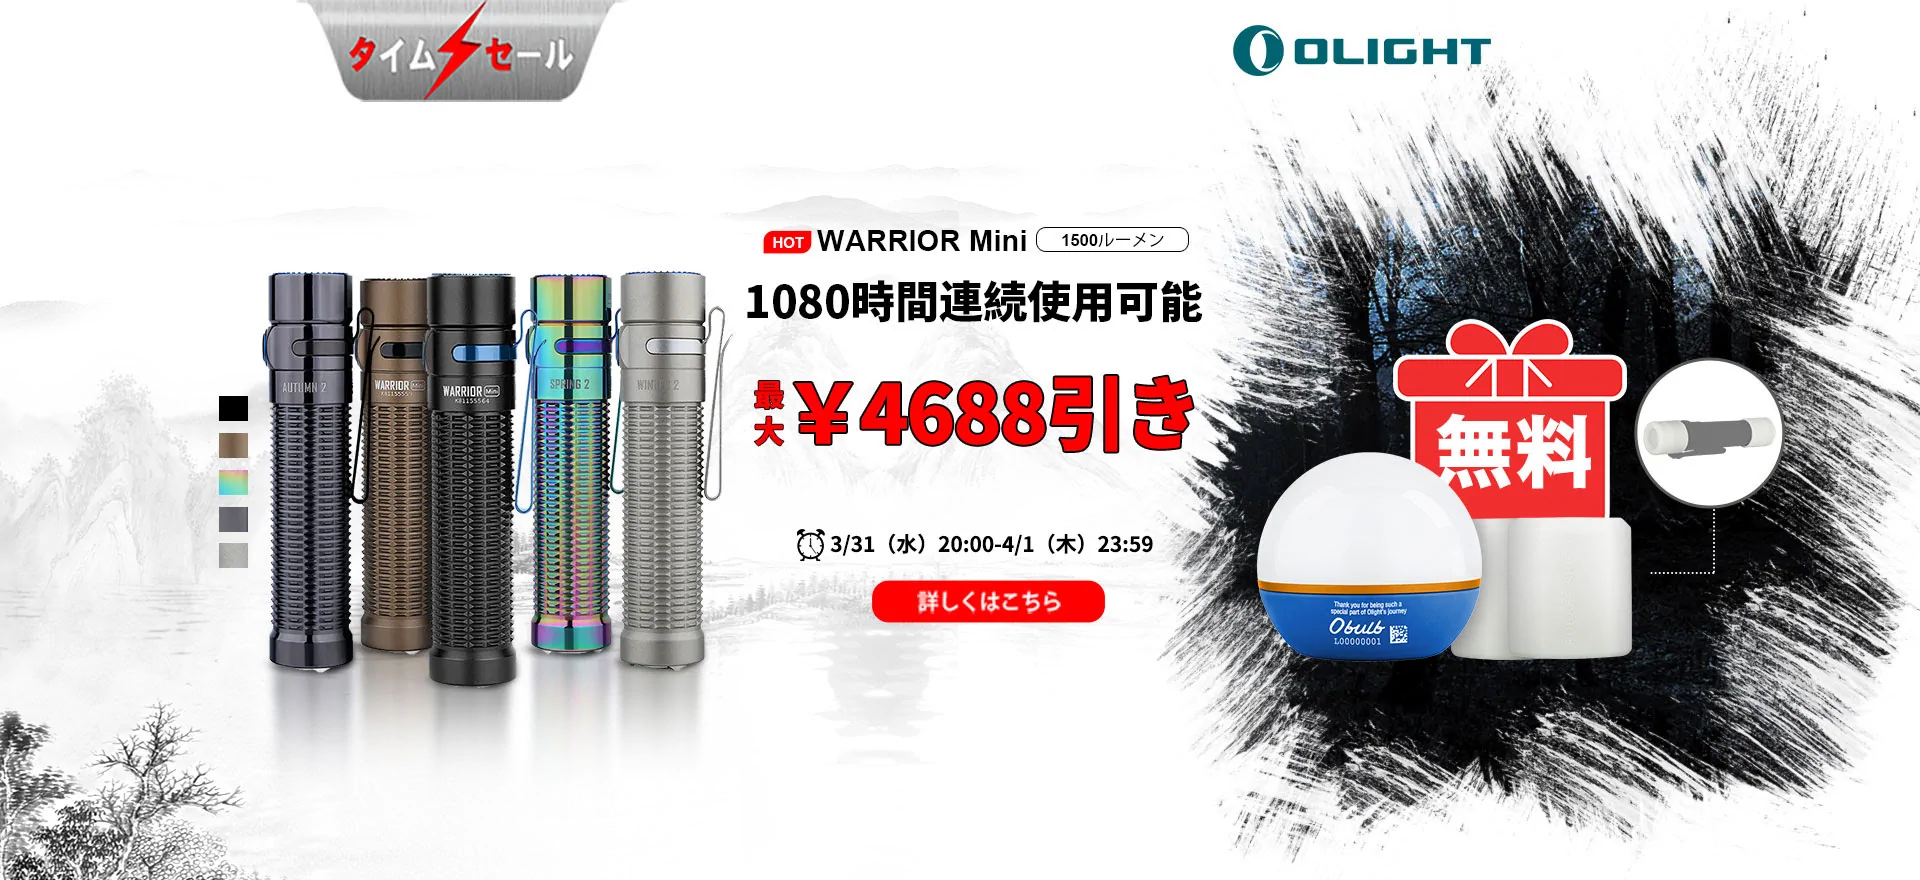 OLIGHT JAPAN Warrior Mini 限定版復活セール